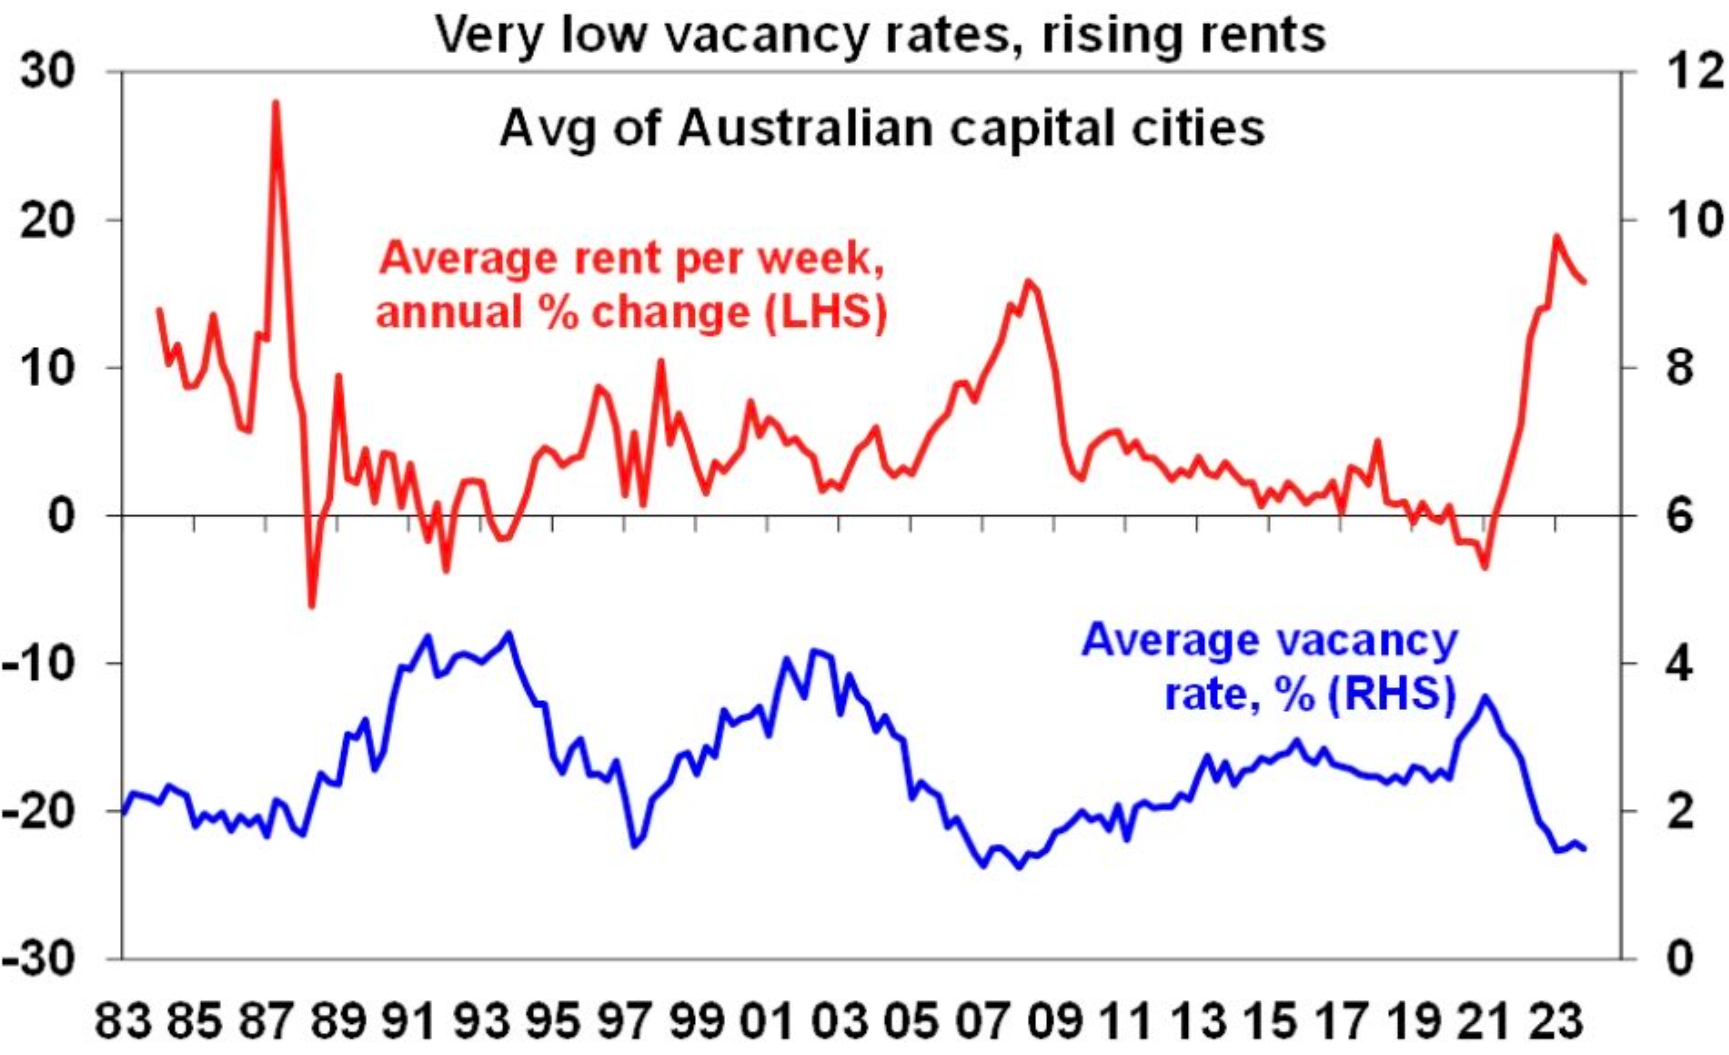 REIA rental vacancy rates